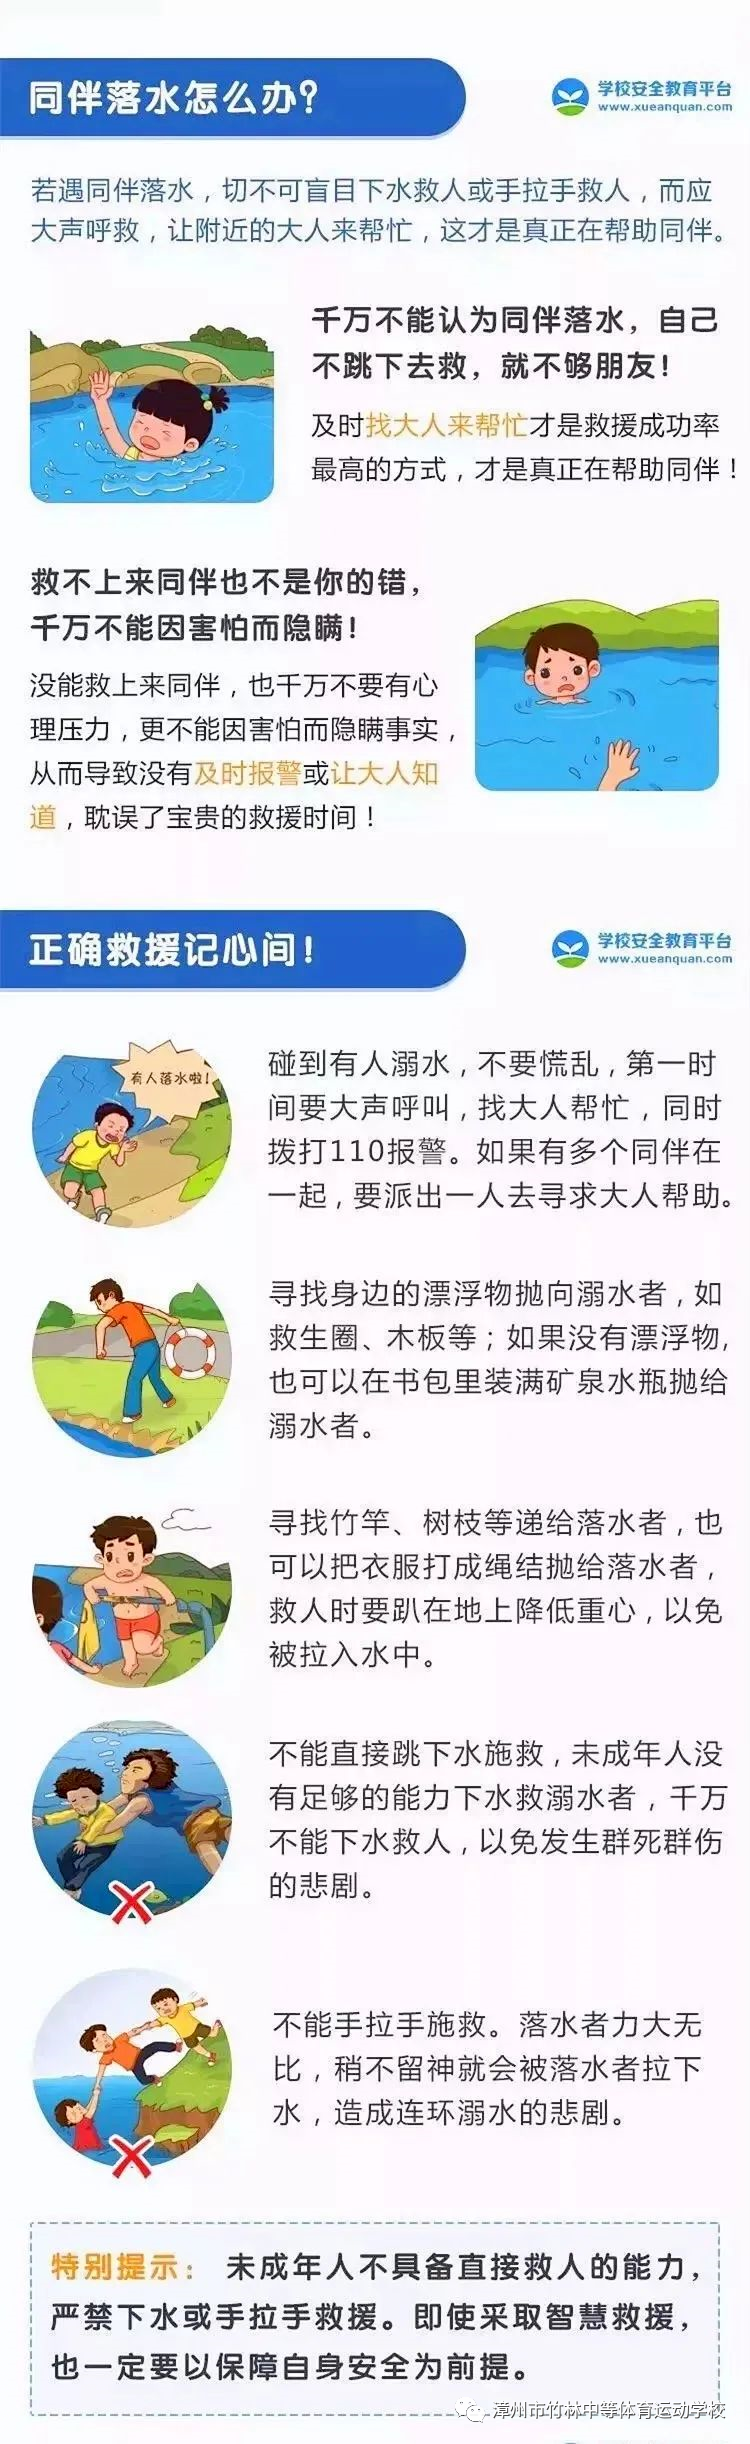 漳州市竹林中等体育运动学校——防溺水，保平安安全教育